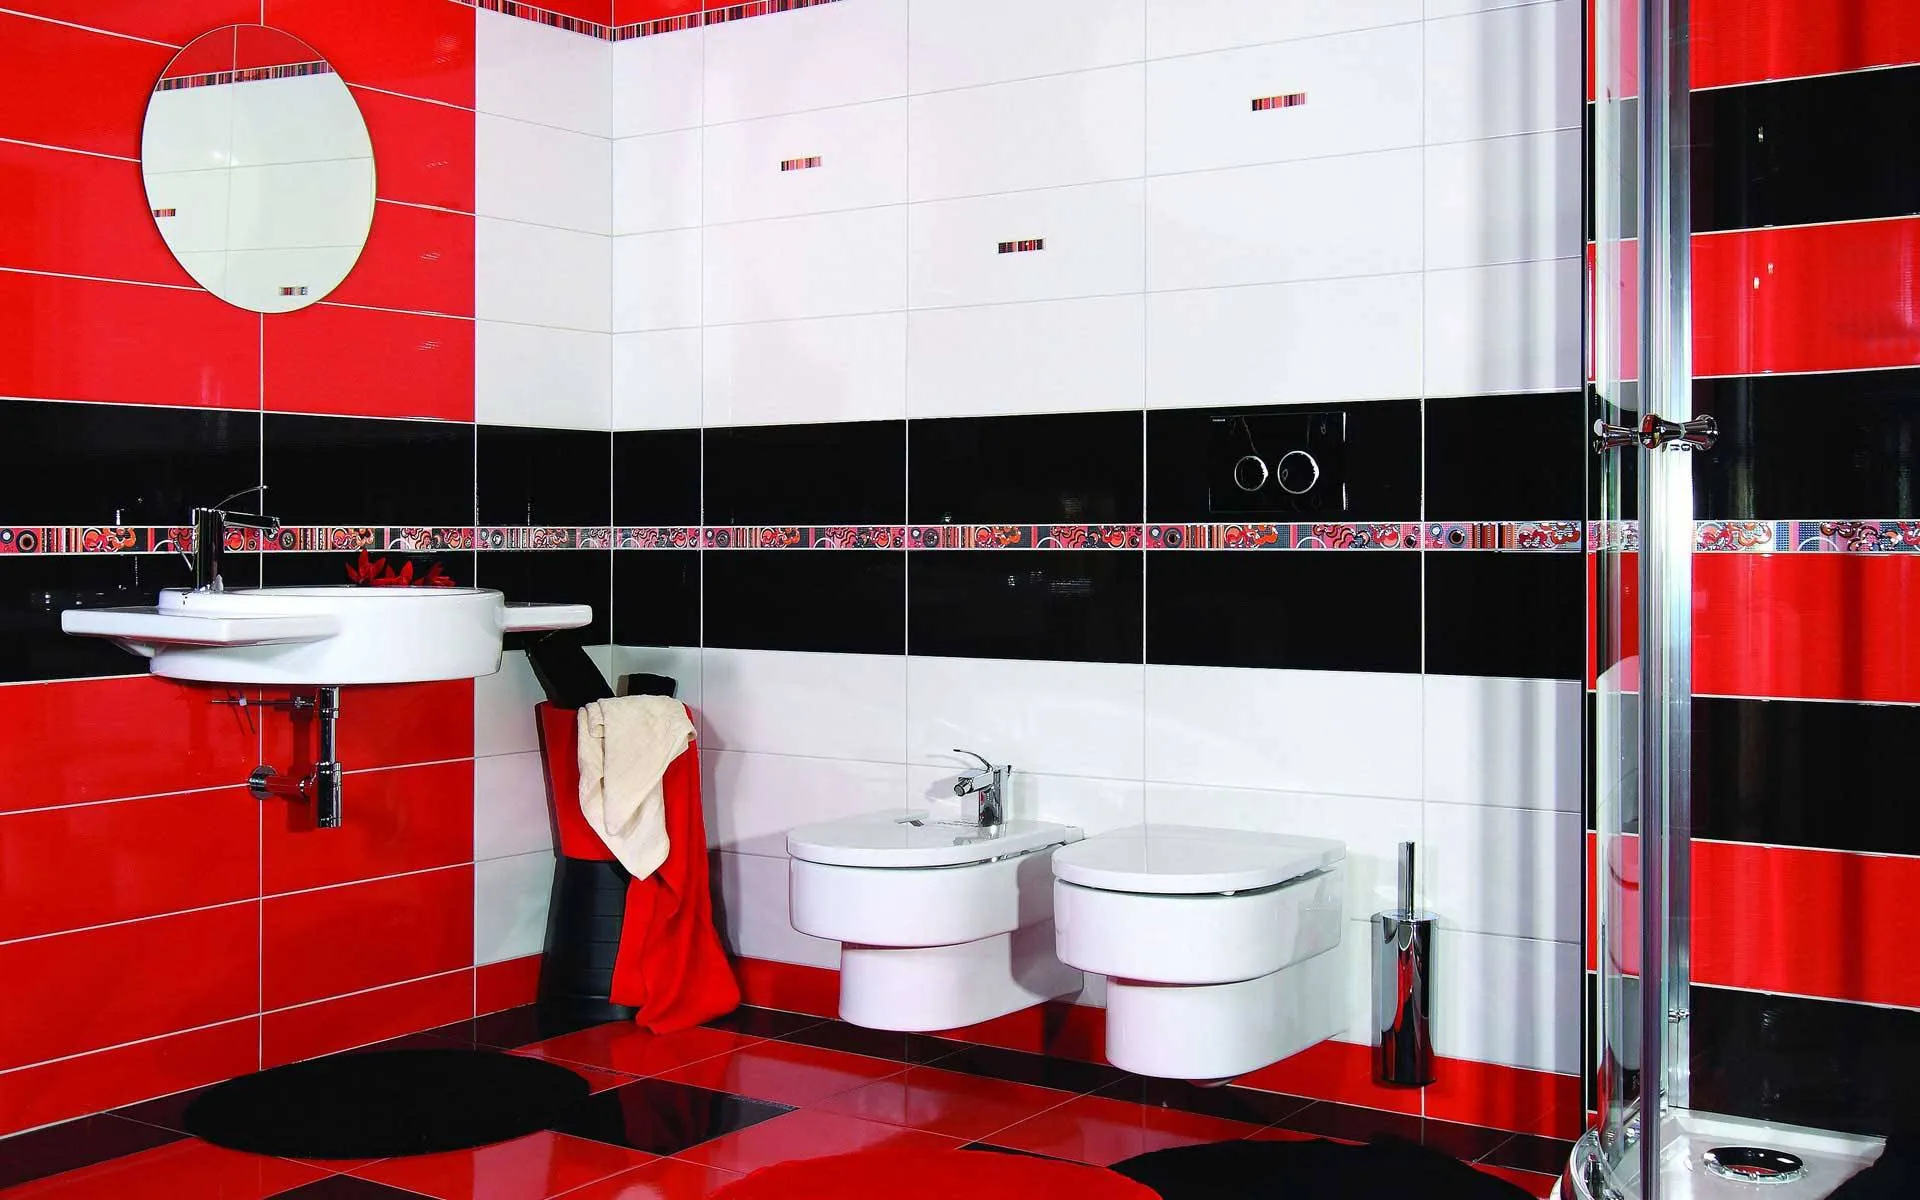 Ванная с использованием керамической плитки красного цвета